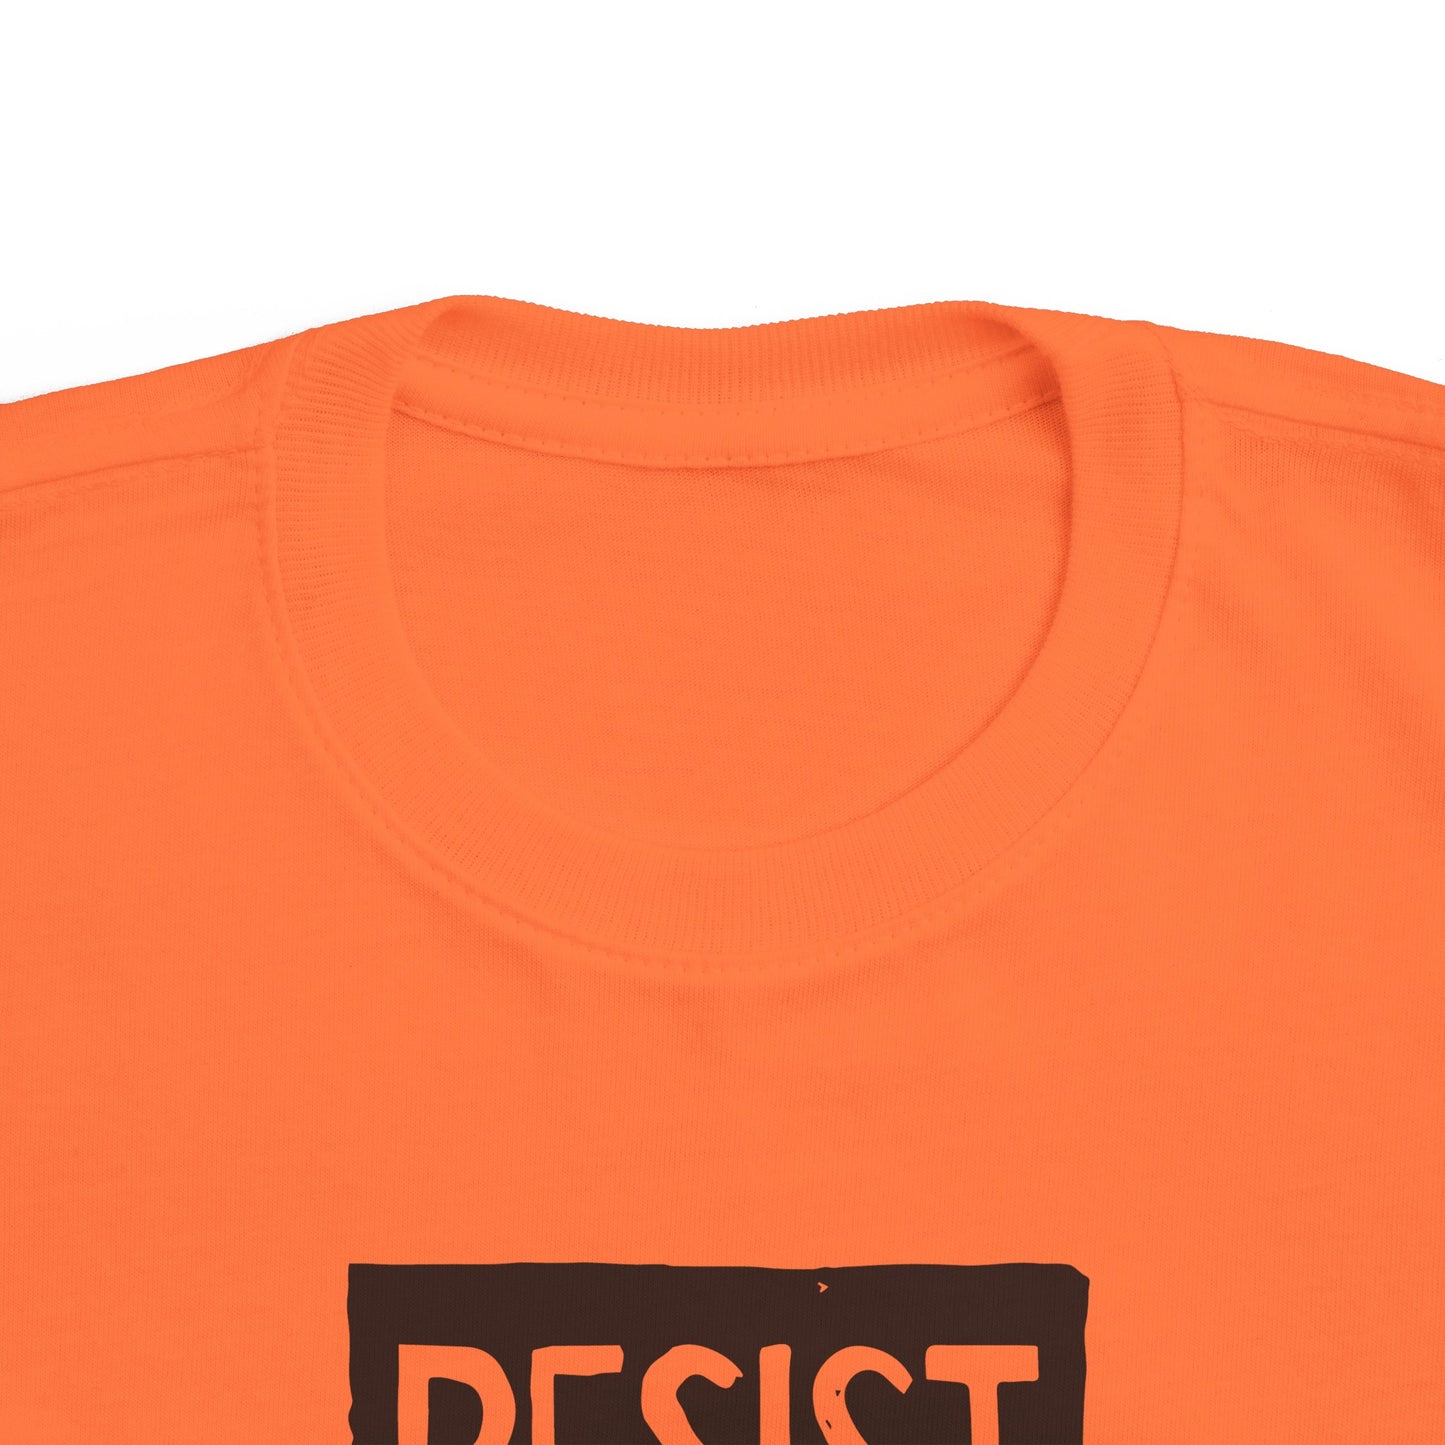 Toddler's Tshirt - Resist - ring-spun cotton